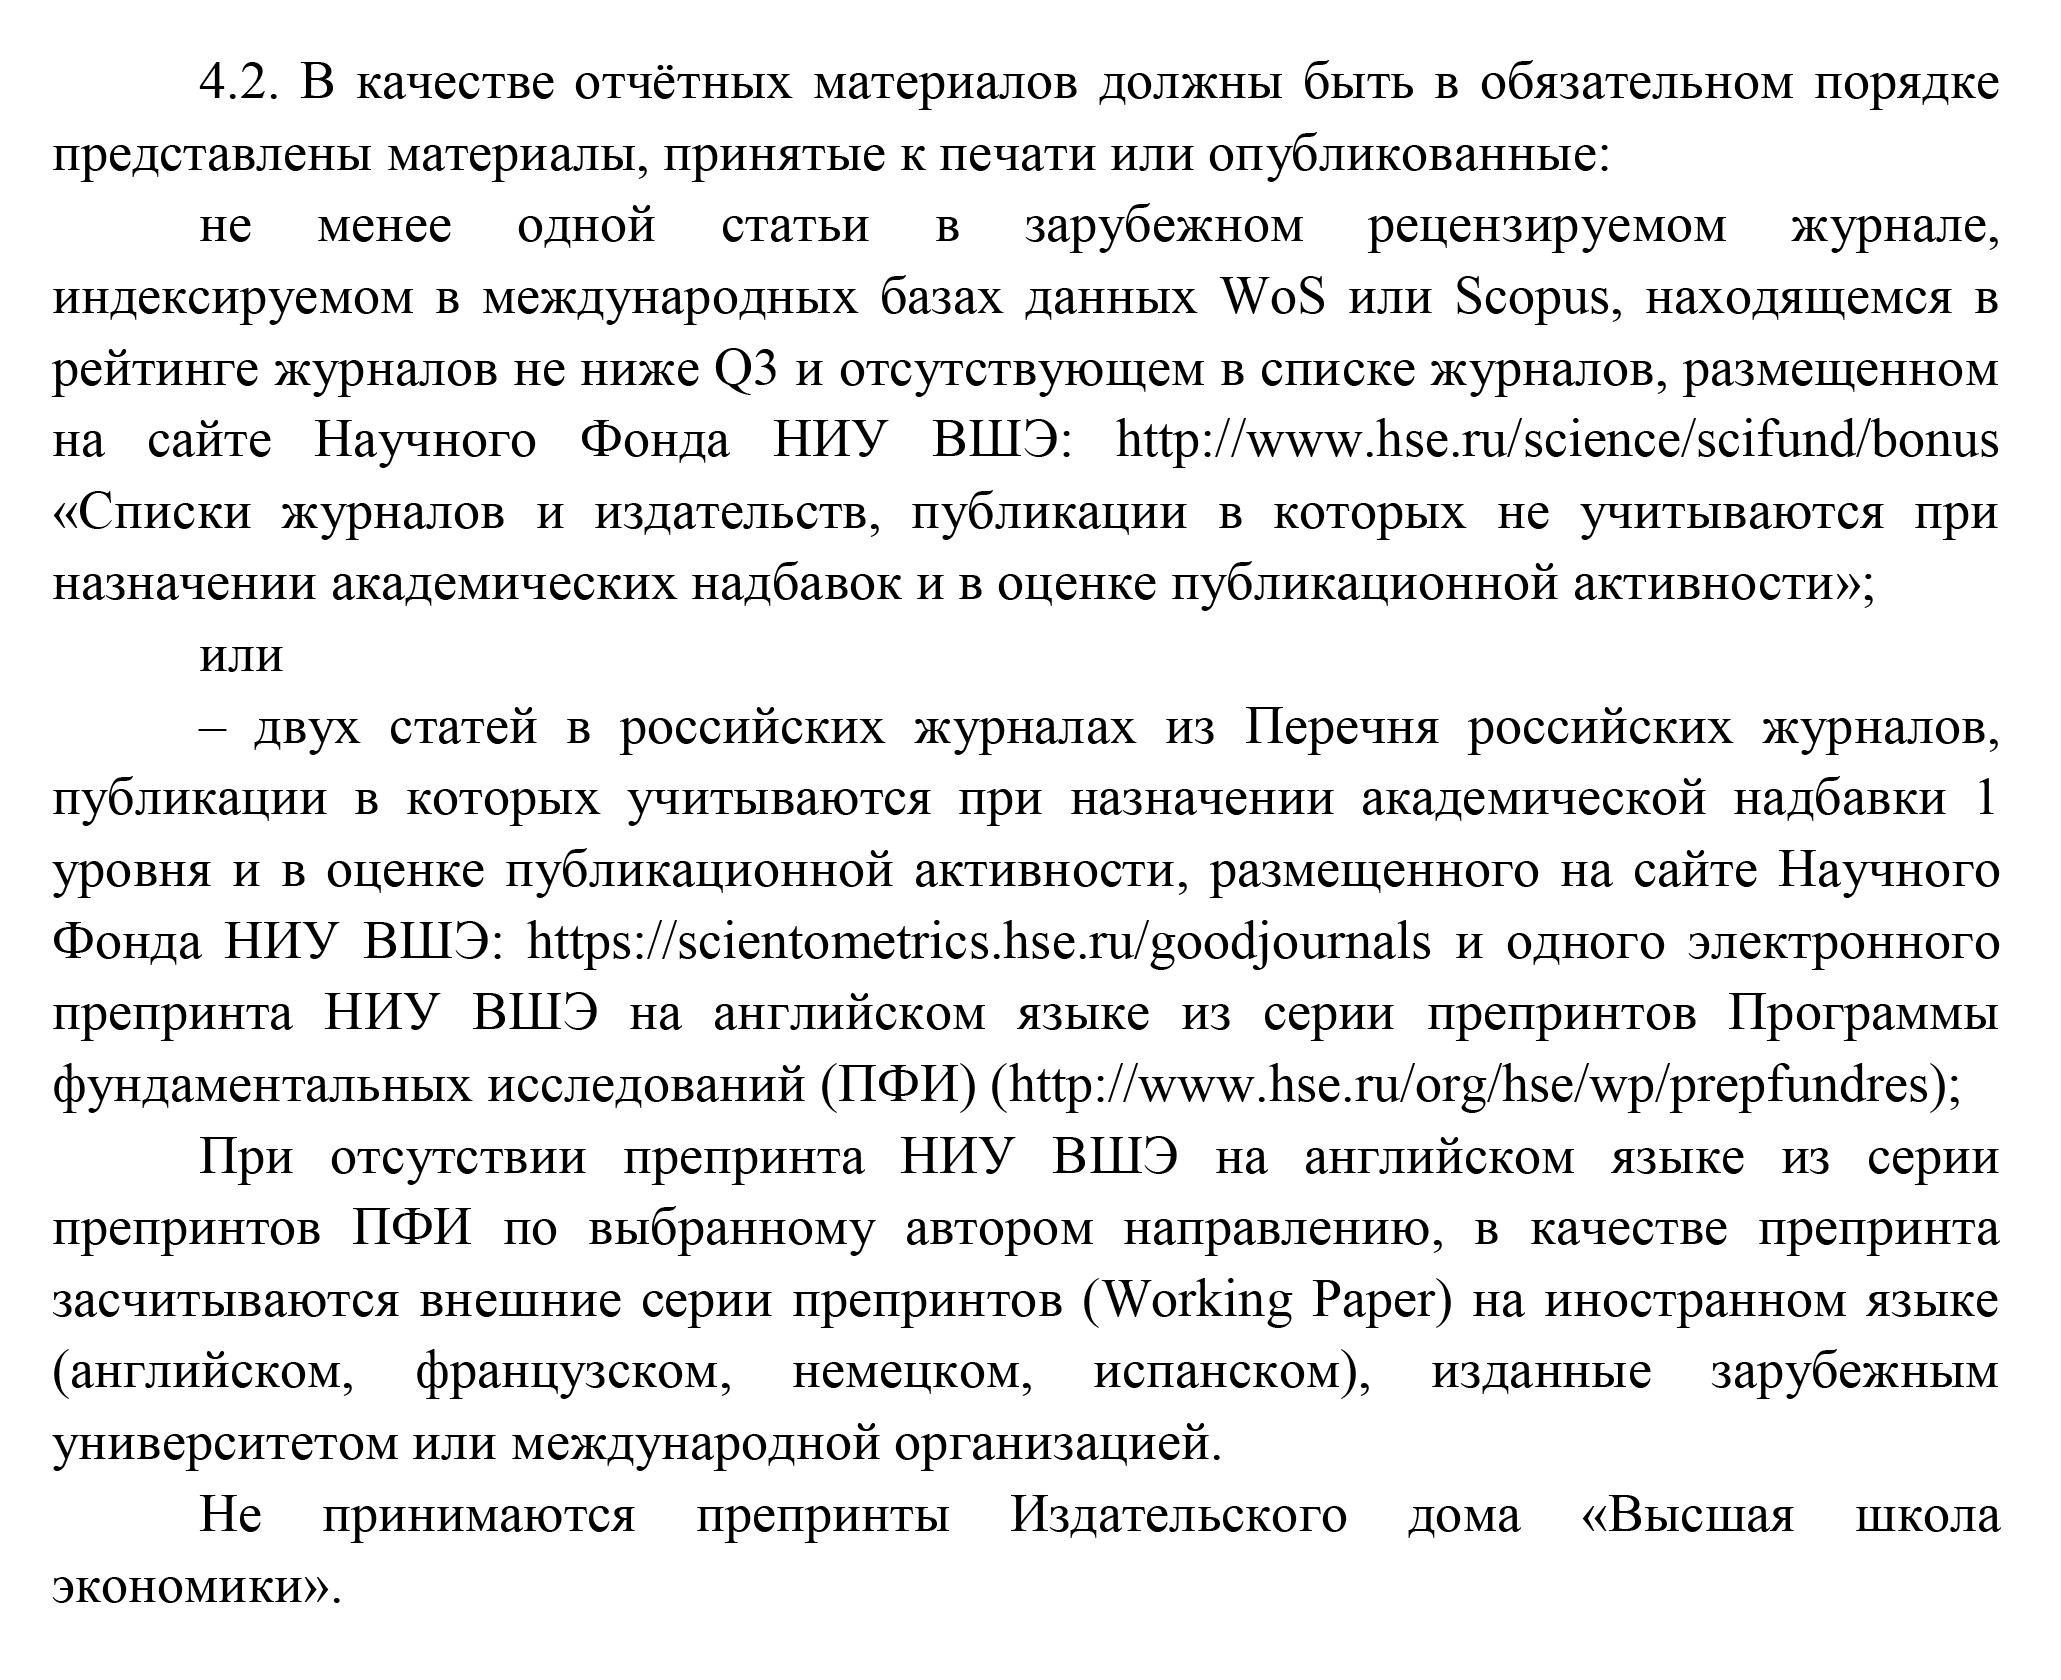 Фрагмент документа, устанавливающего требования по отчетам для конкурса «Стартовый грант». Источник: hse.ru